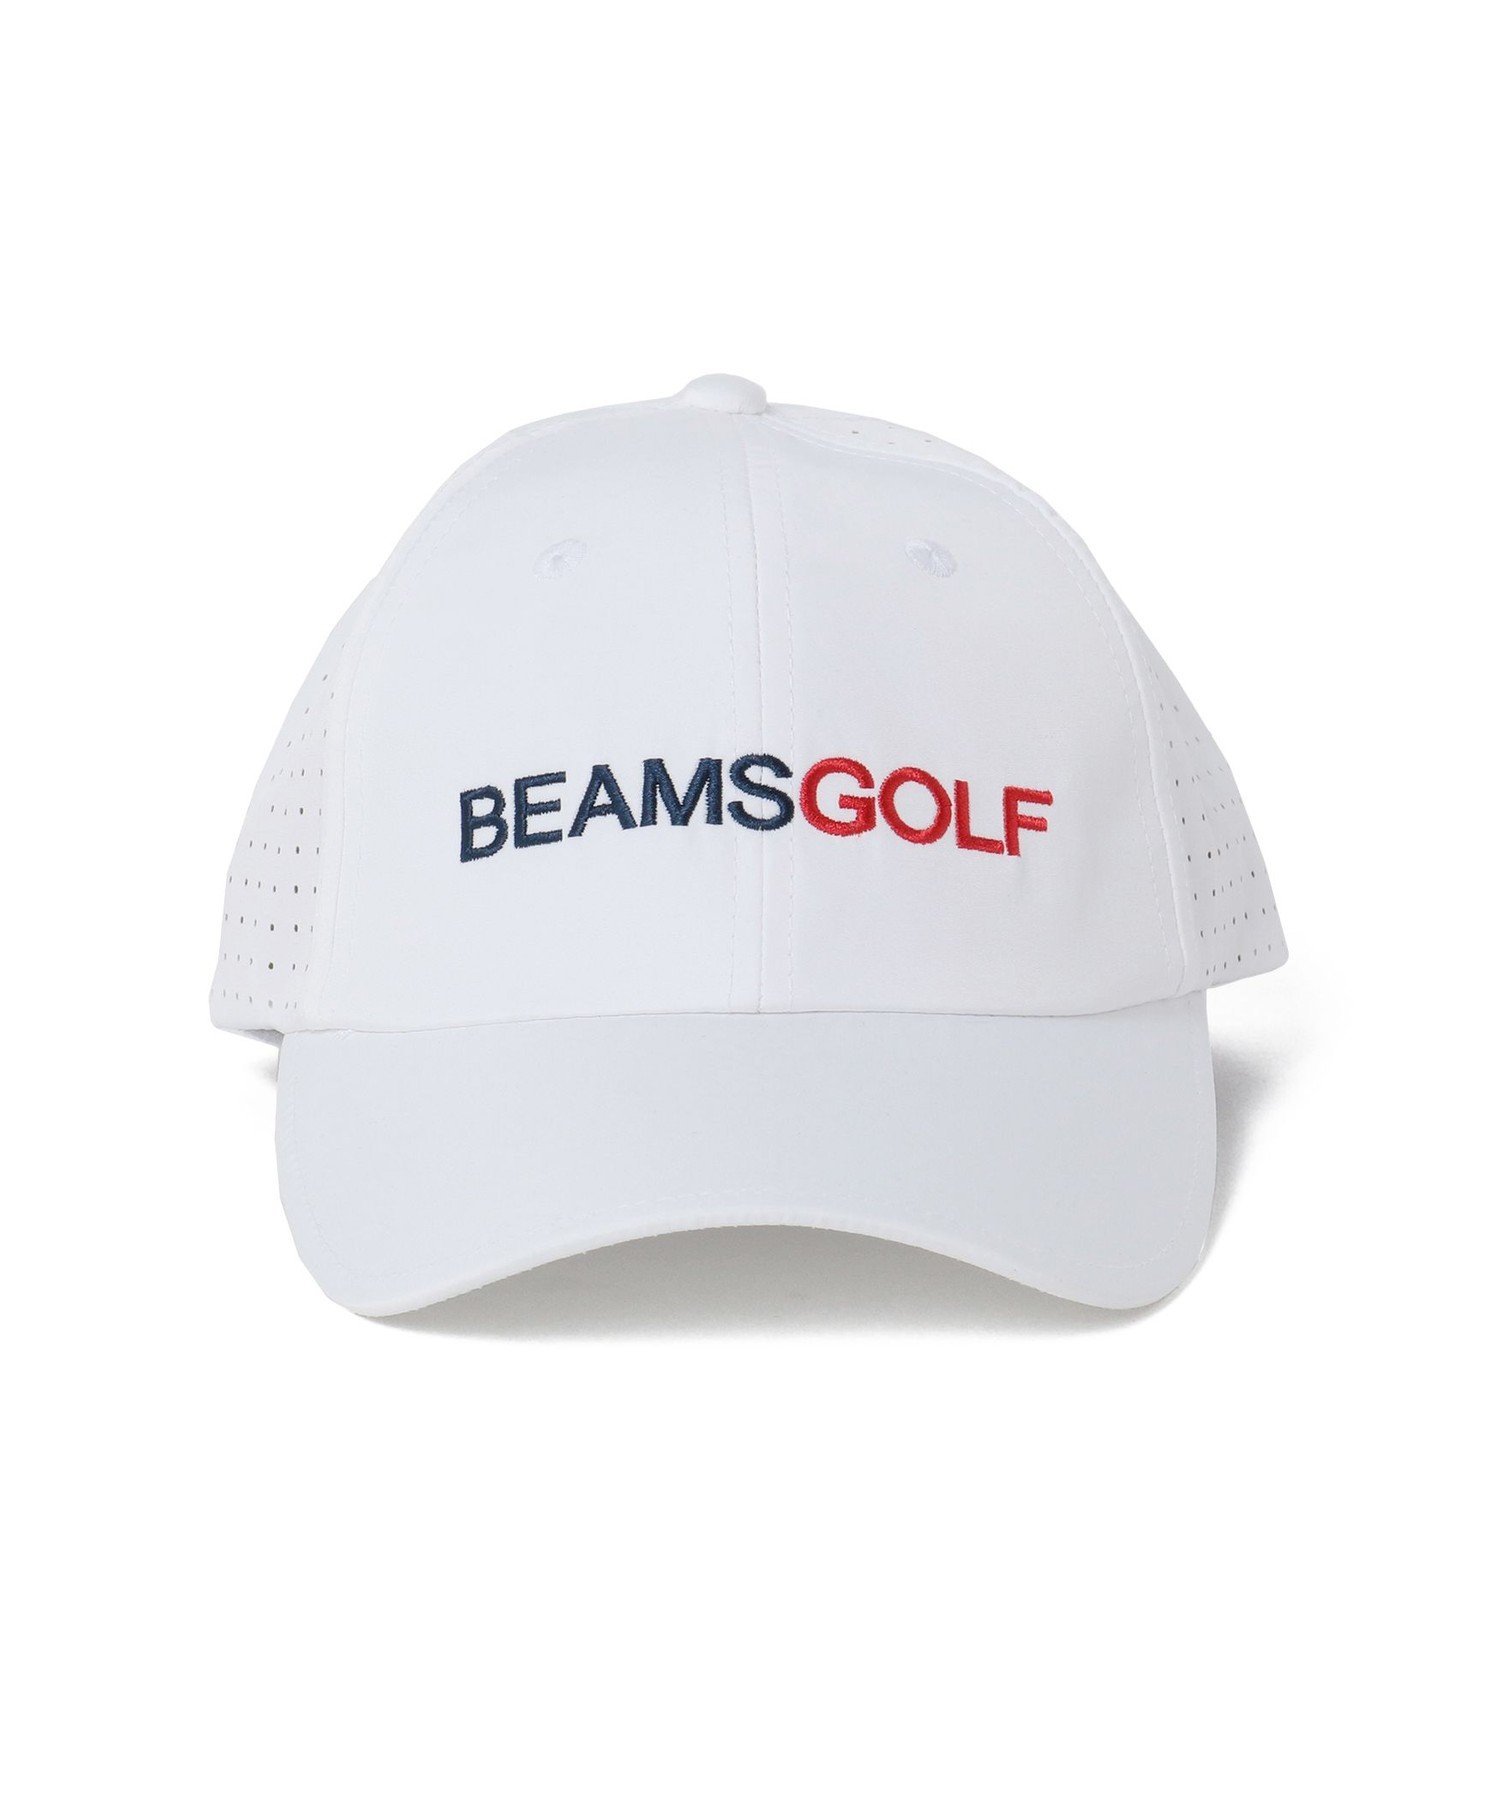 ビームス 帽子 メンズ BEAMS GOLF BEAMS GOLF / レーザー パンチング キャップ 父の日 ビームス ゴルフ 帽子 キャップ ホワイト ベージュ ネイビー【送料無料】